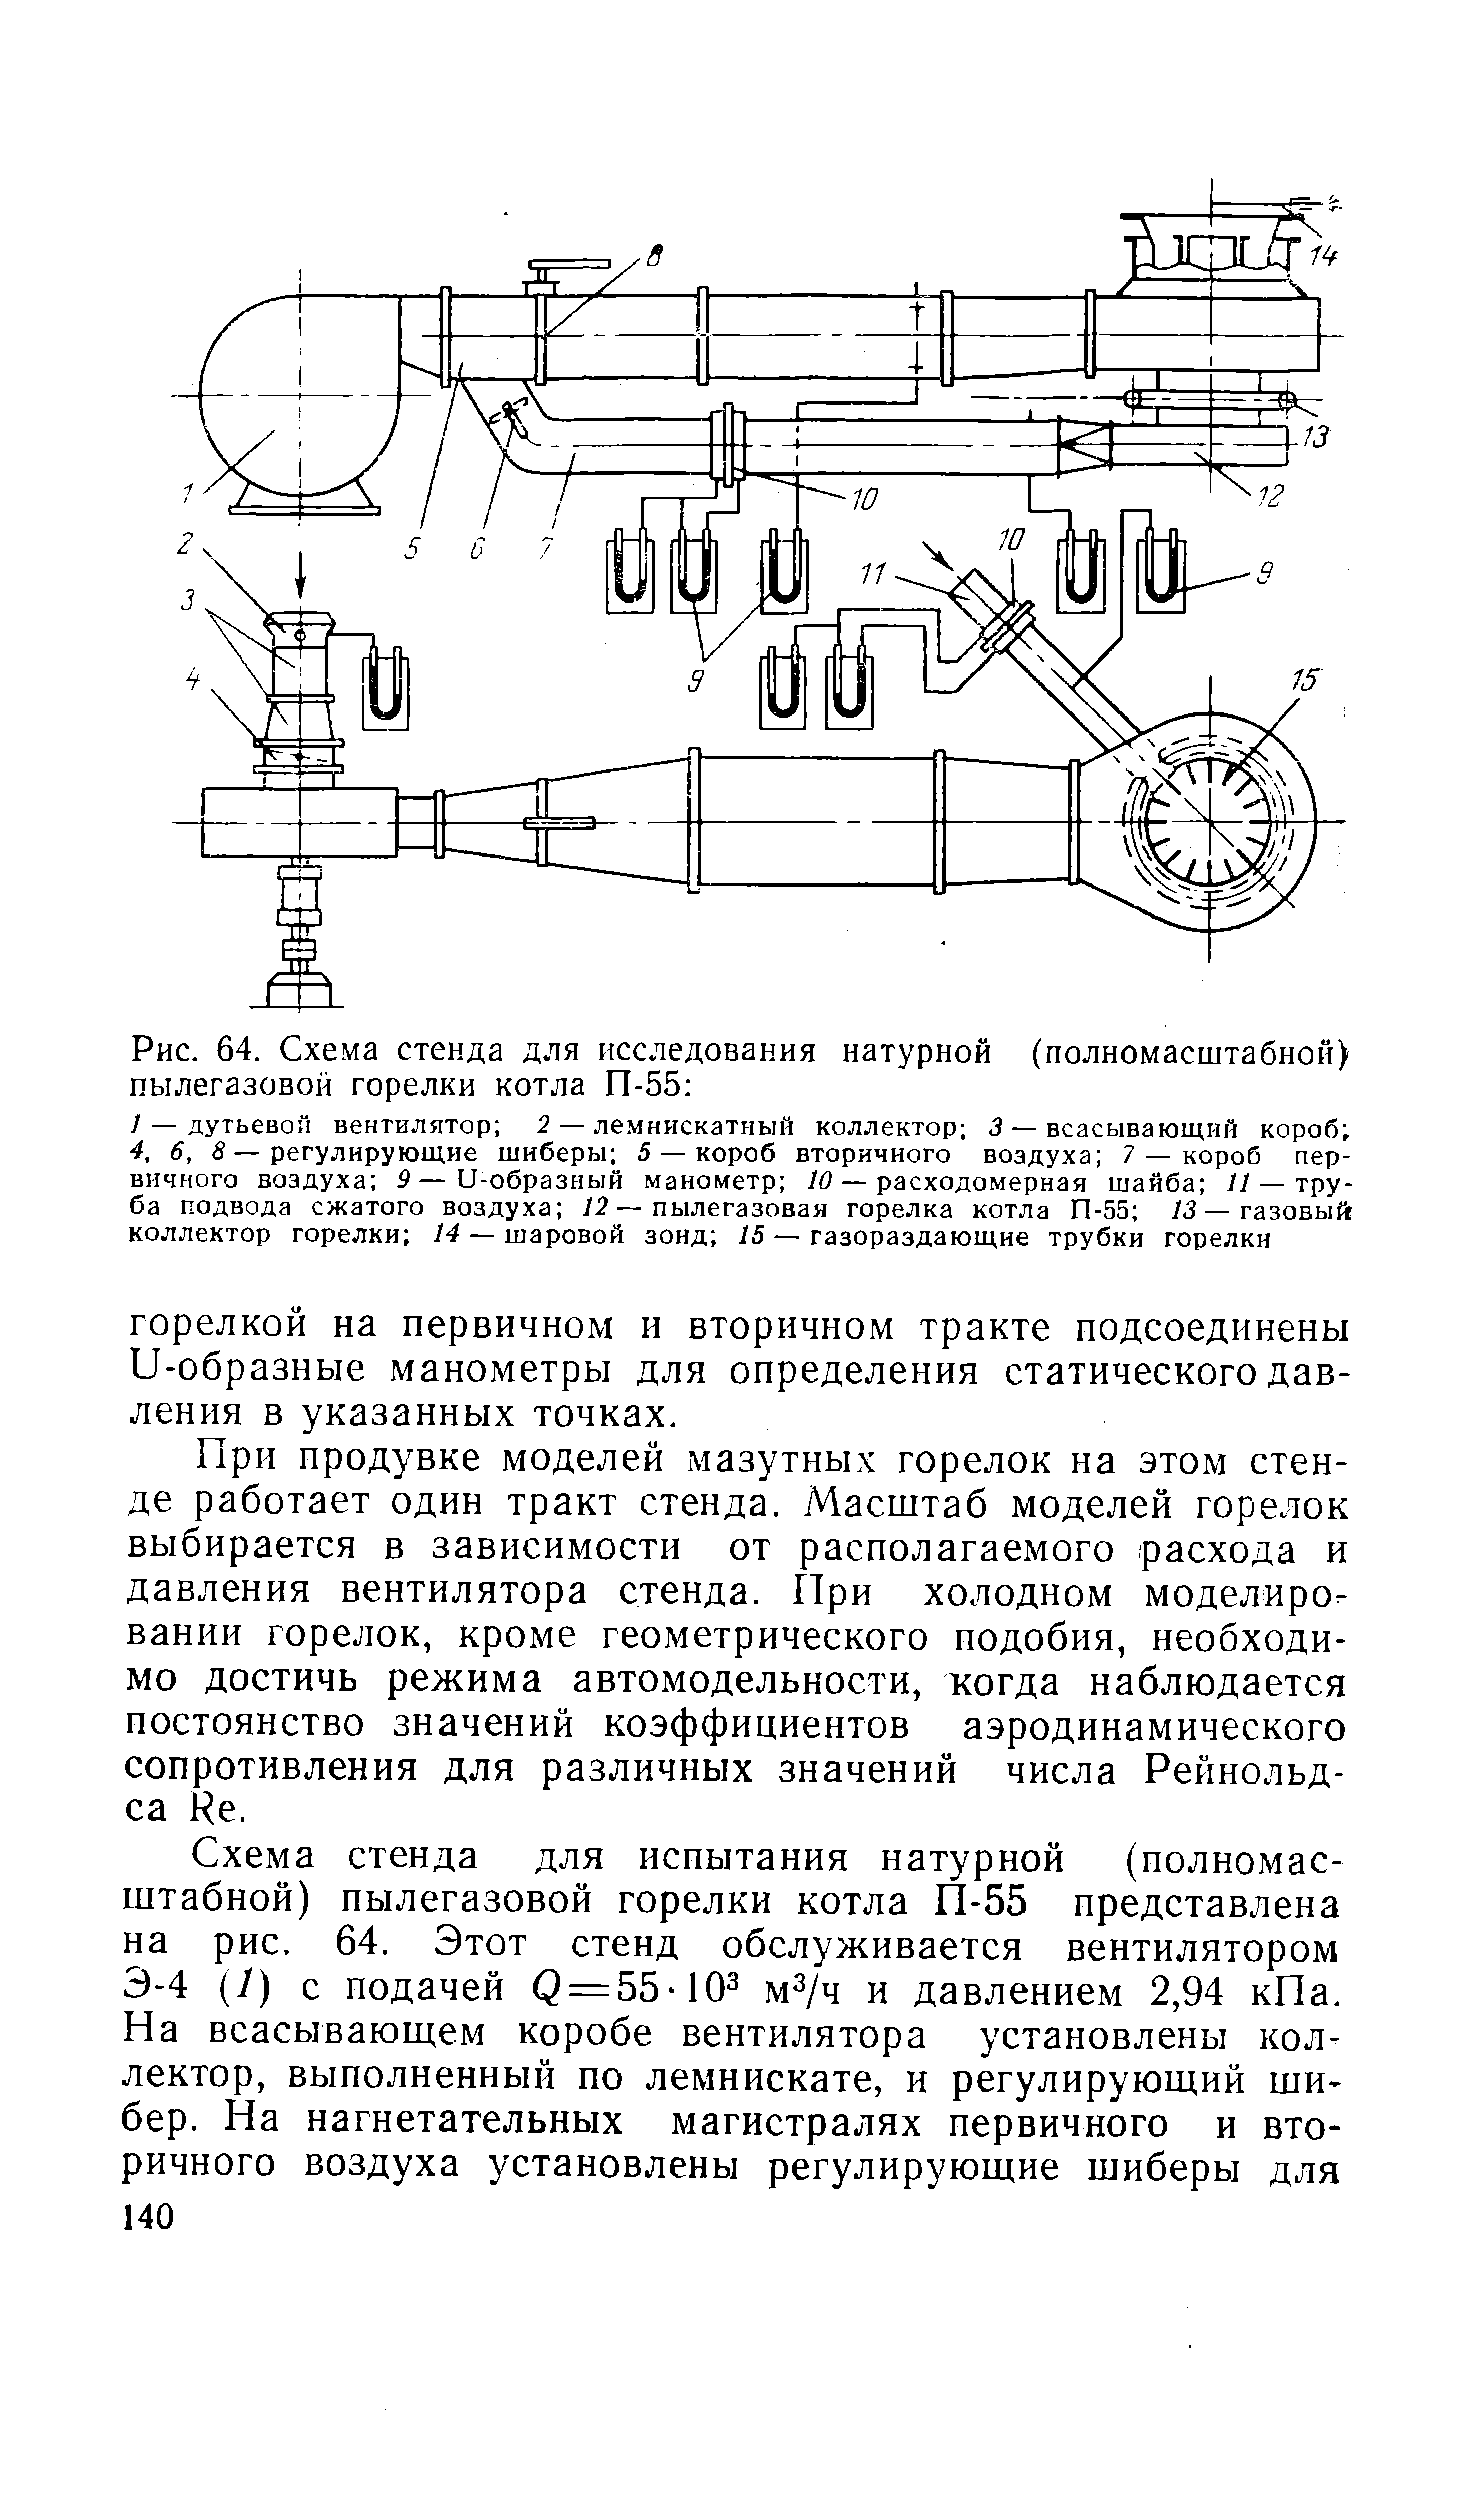 Рис. 64. Схема стенда для исследования натурной (полномасштабной) пылегазовой горелки котла П-55 
